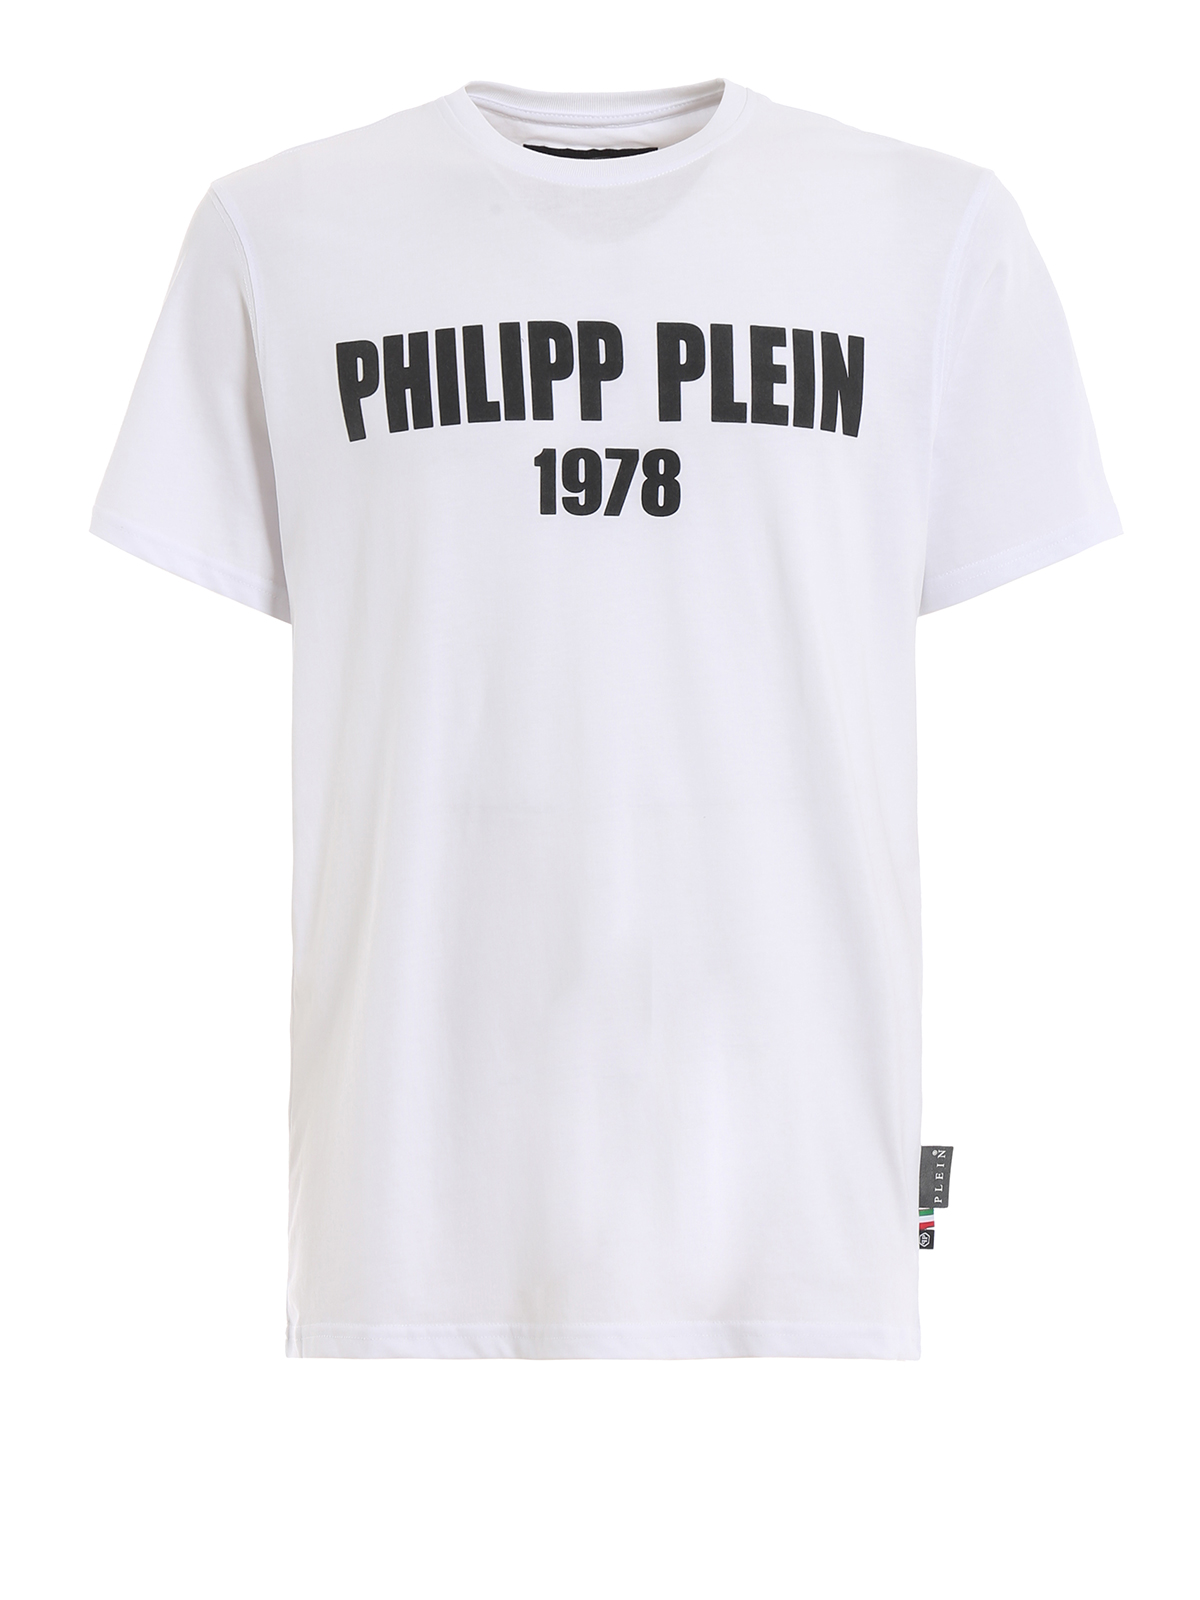 phillip plein 1978